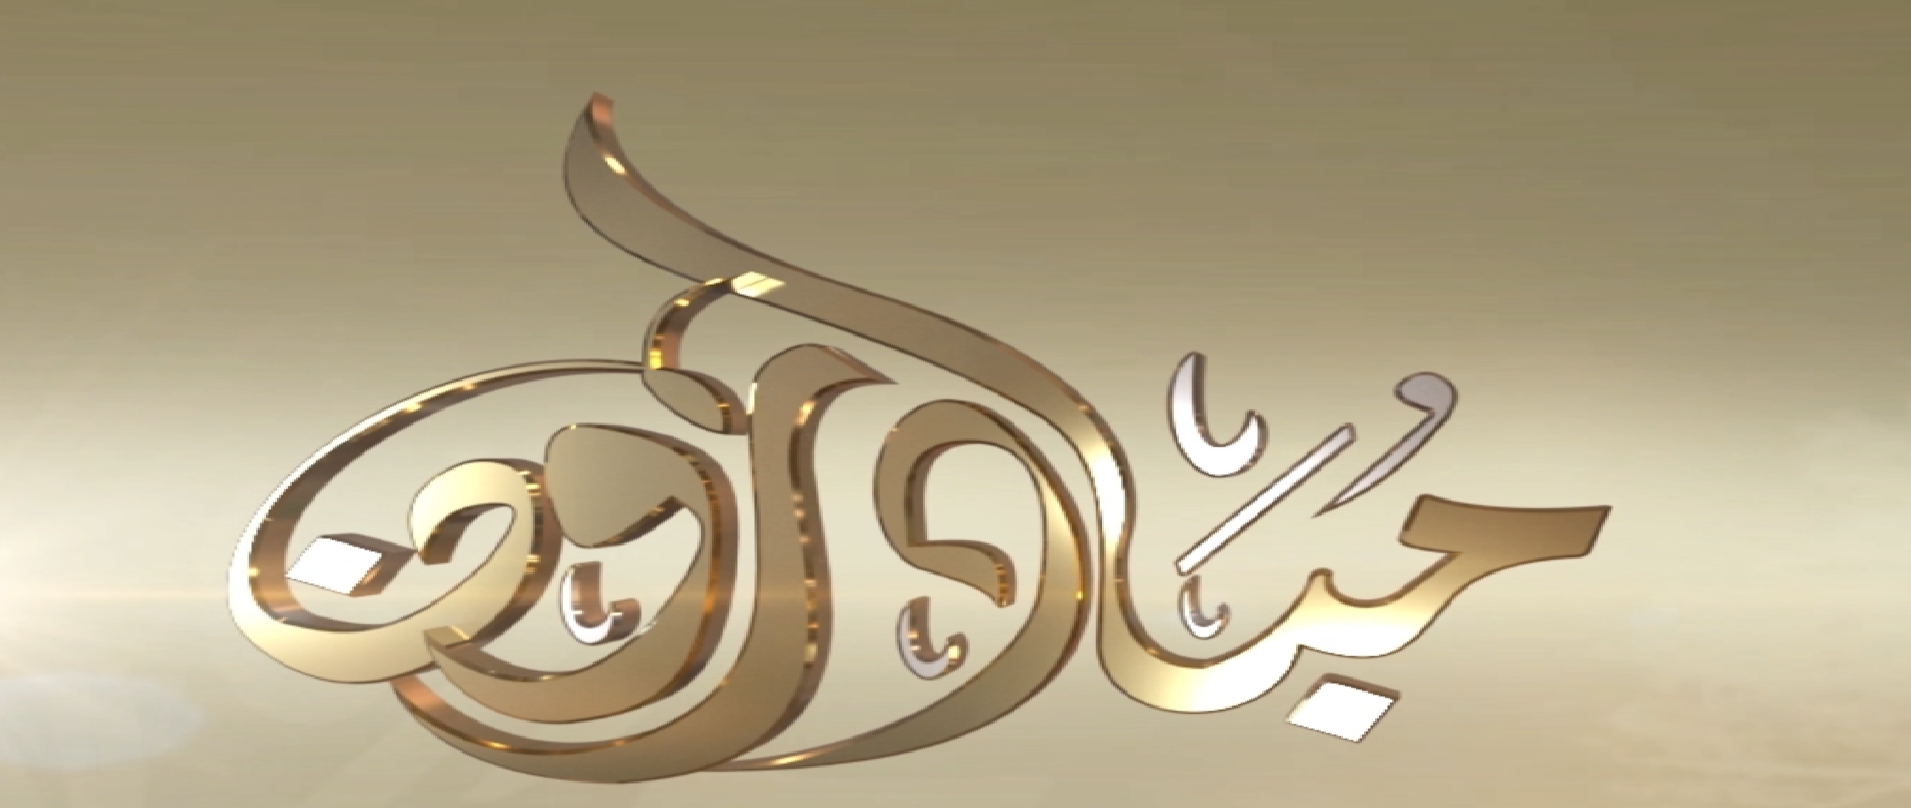 شاهد : برنامج مبادرون من قناه سبأ بتاريخ 2/رمضان/1441
